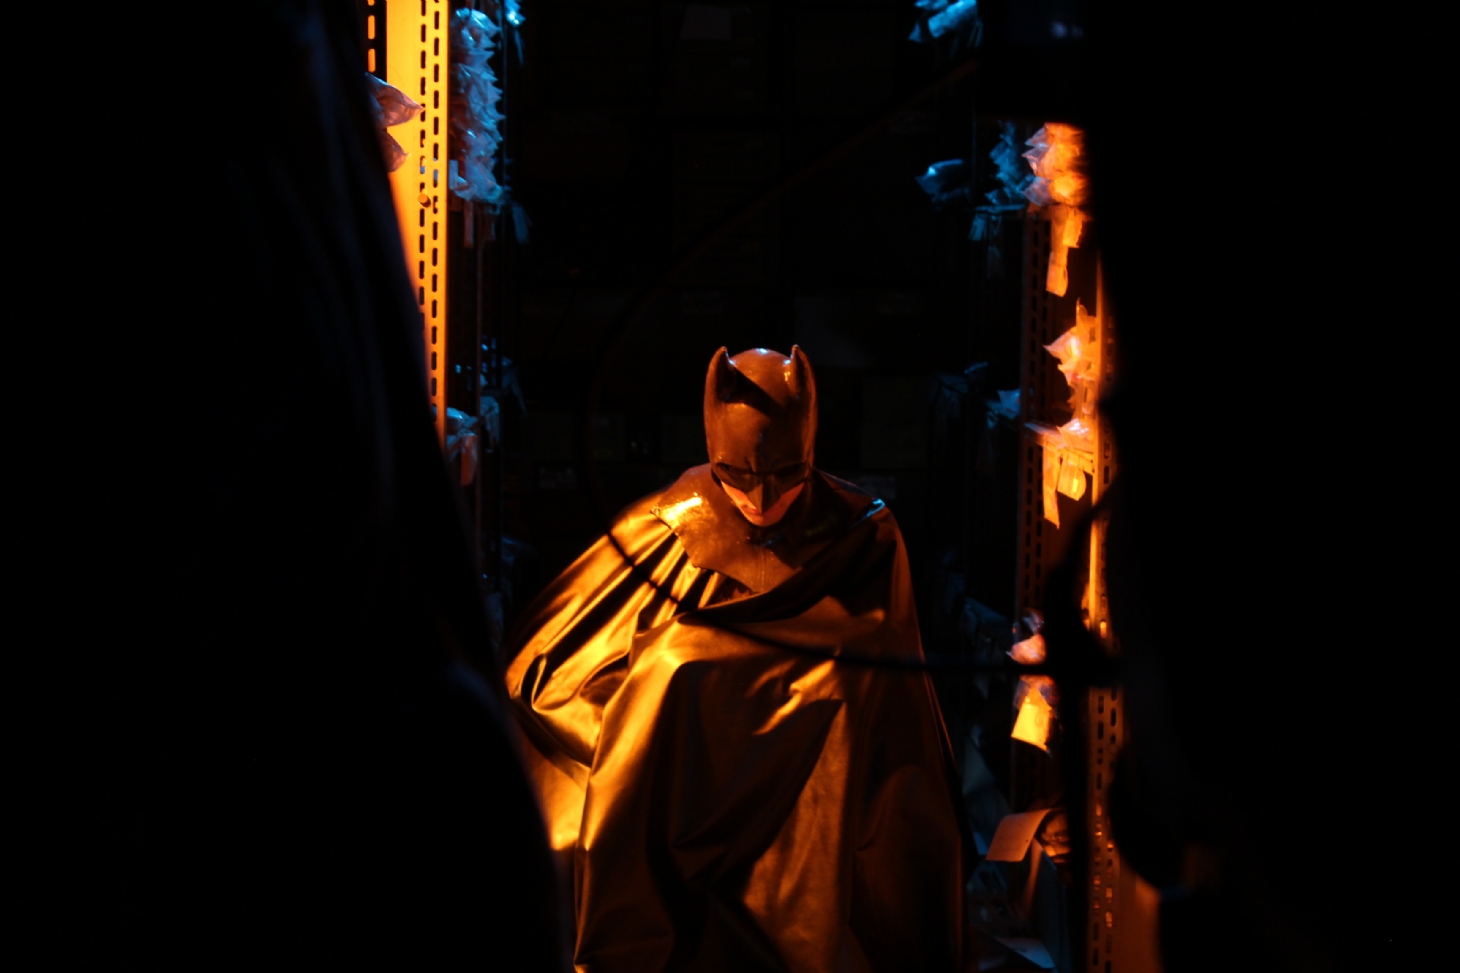 Fanfic brasileiro sobre o Batman será exibido no 3º Santos Film Fest | Jornal da Orla